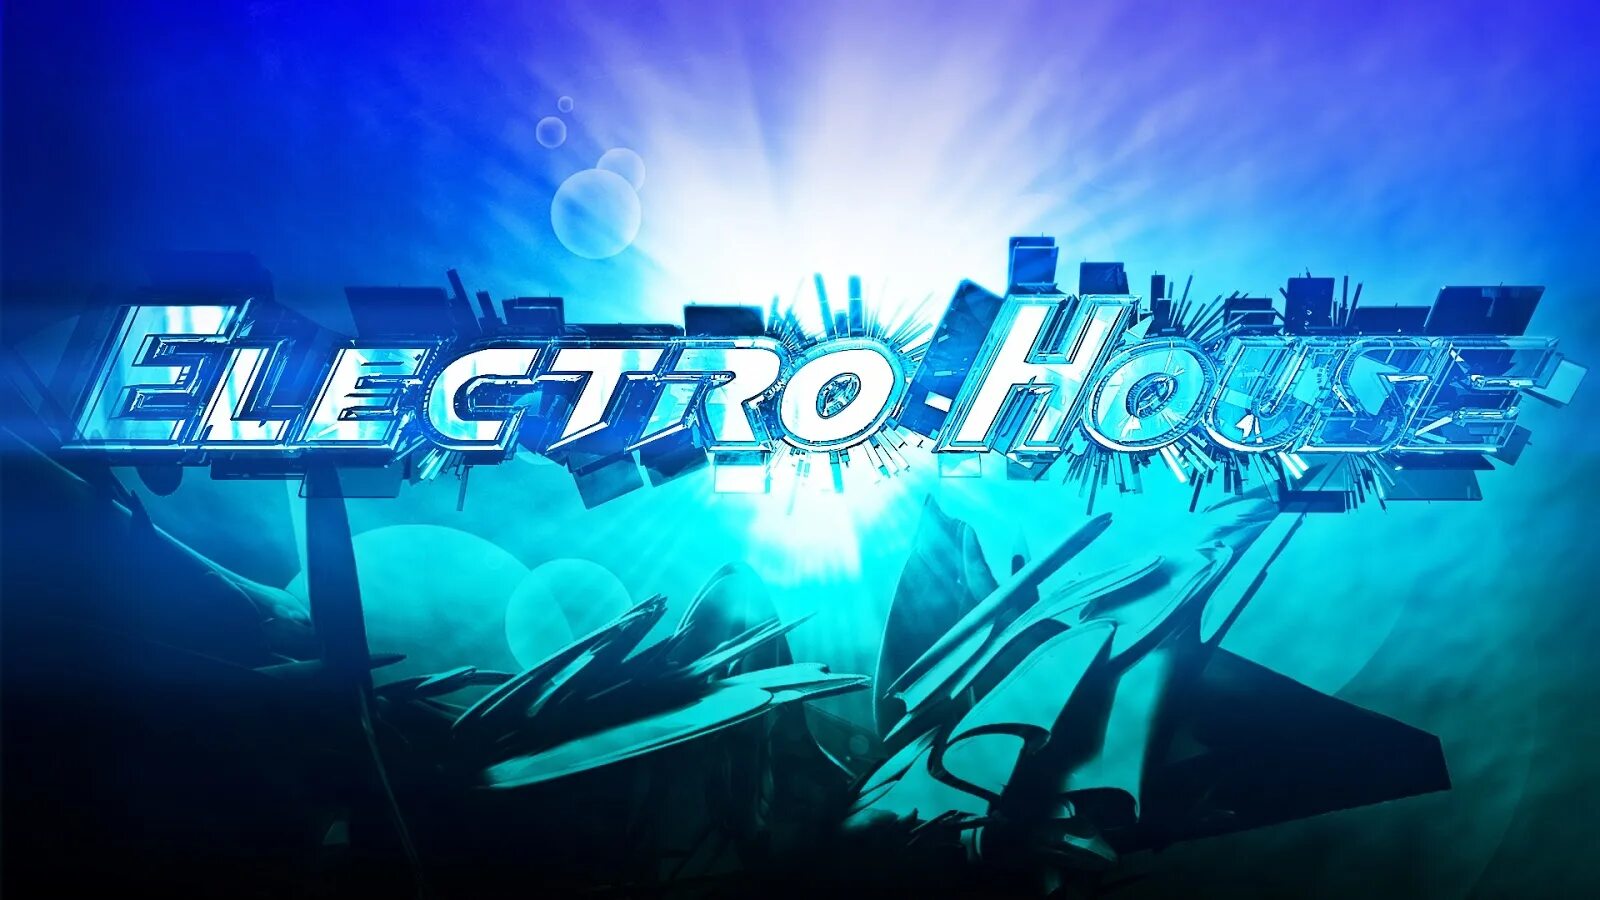 Электро Хаус. Электро Мьюзик. Electro House картинки. Electro House обои. Electro house mixes